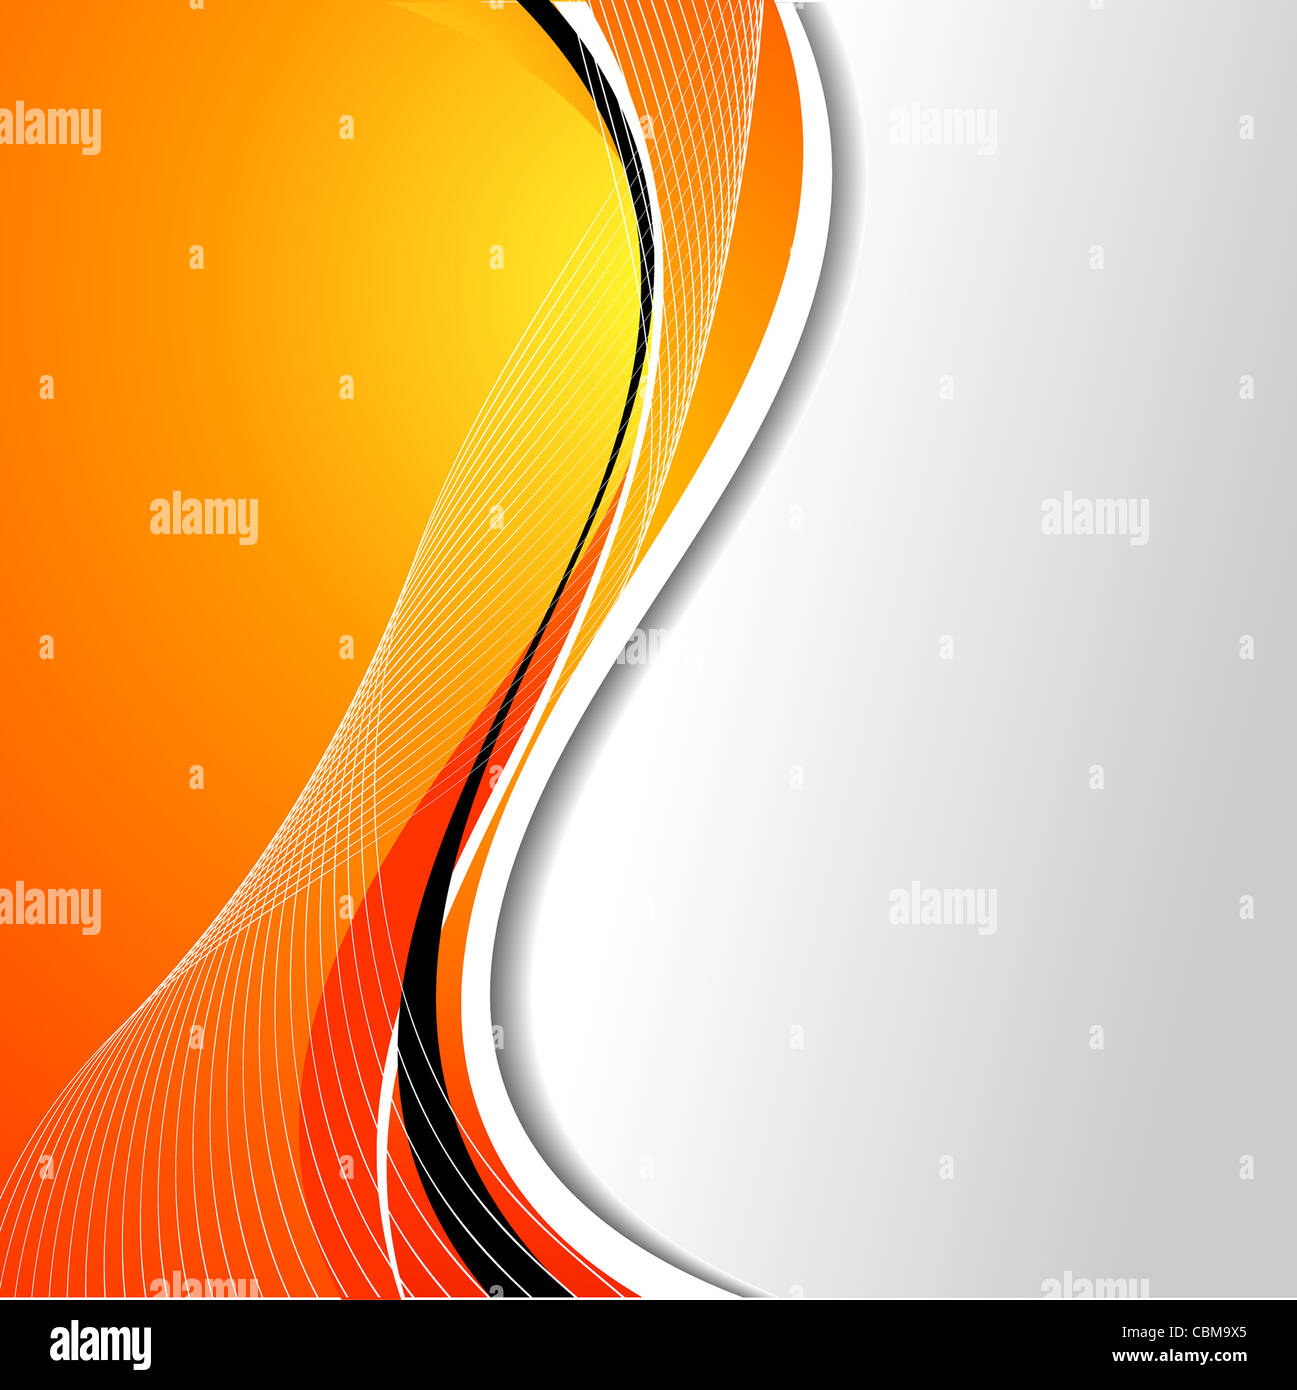 Zusammenfassung Hintergrund mit fließenden Linien in Orangetönen Stockfoto